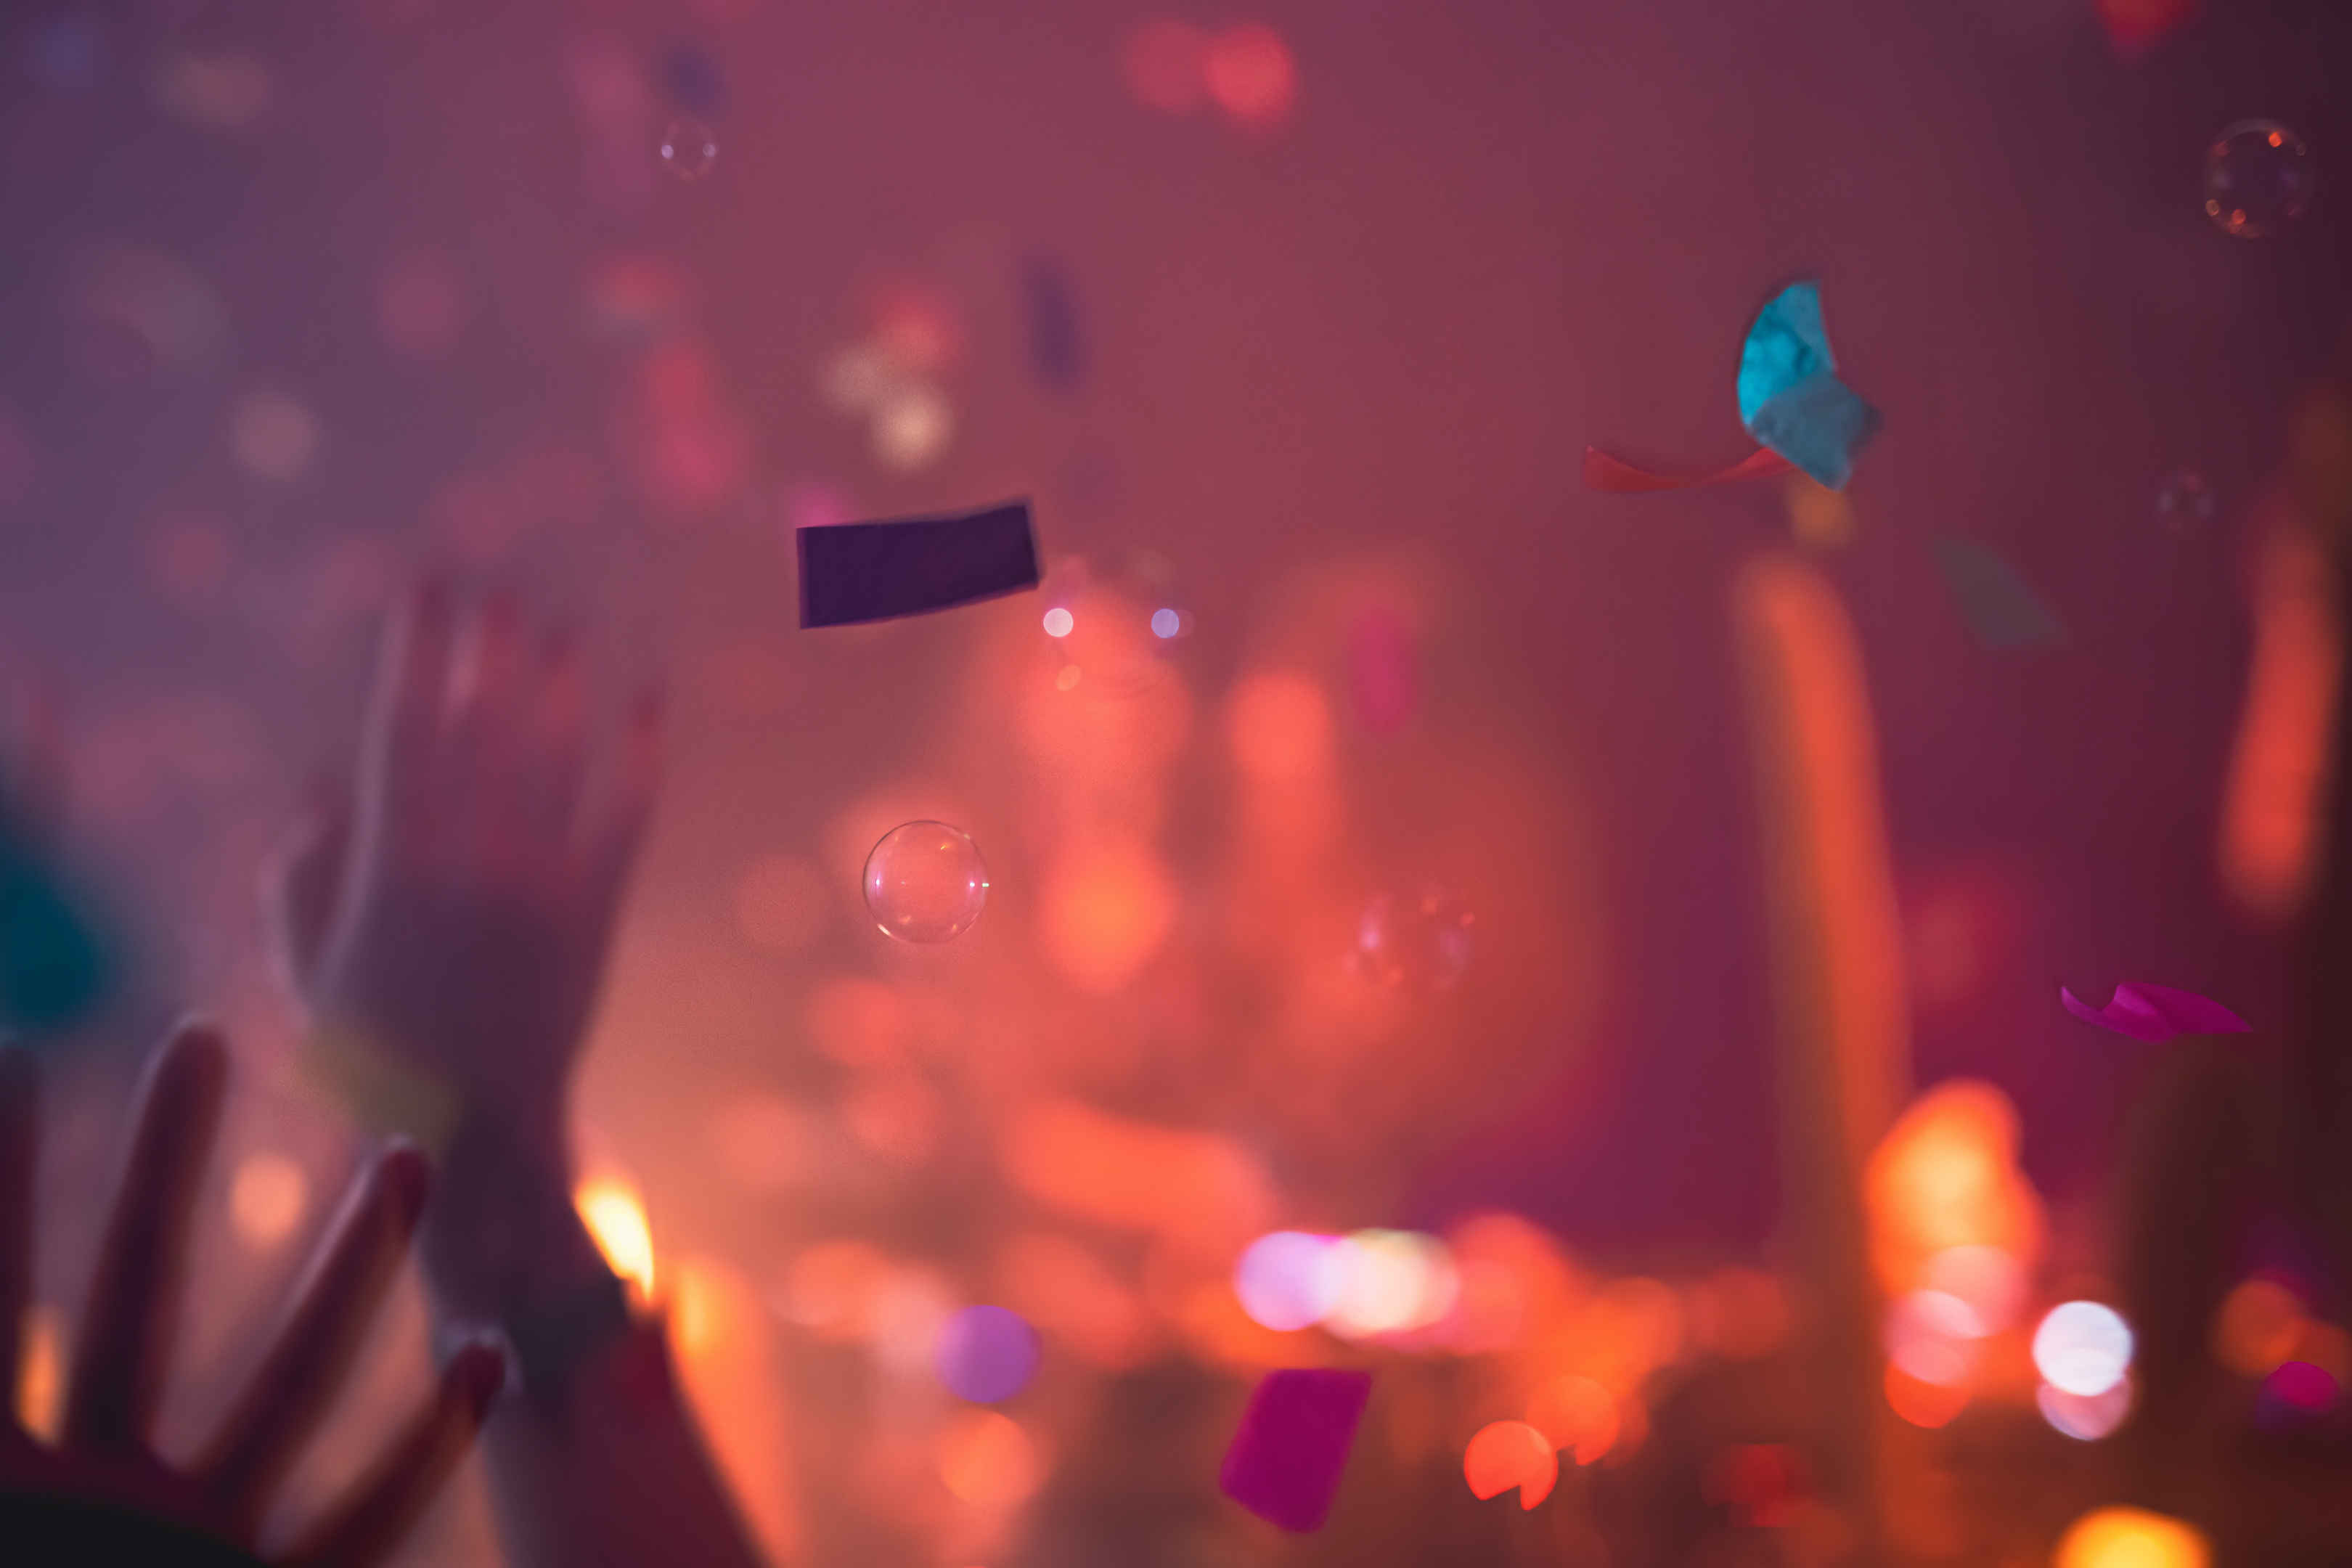 Des silhouettes de mains dans les airs entourés de bulles et confettis, on devine qu'il s'agit d'un événement où les gens sautent de joie